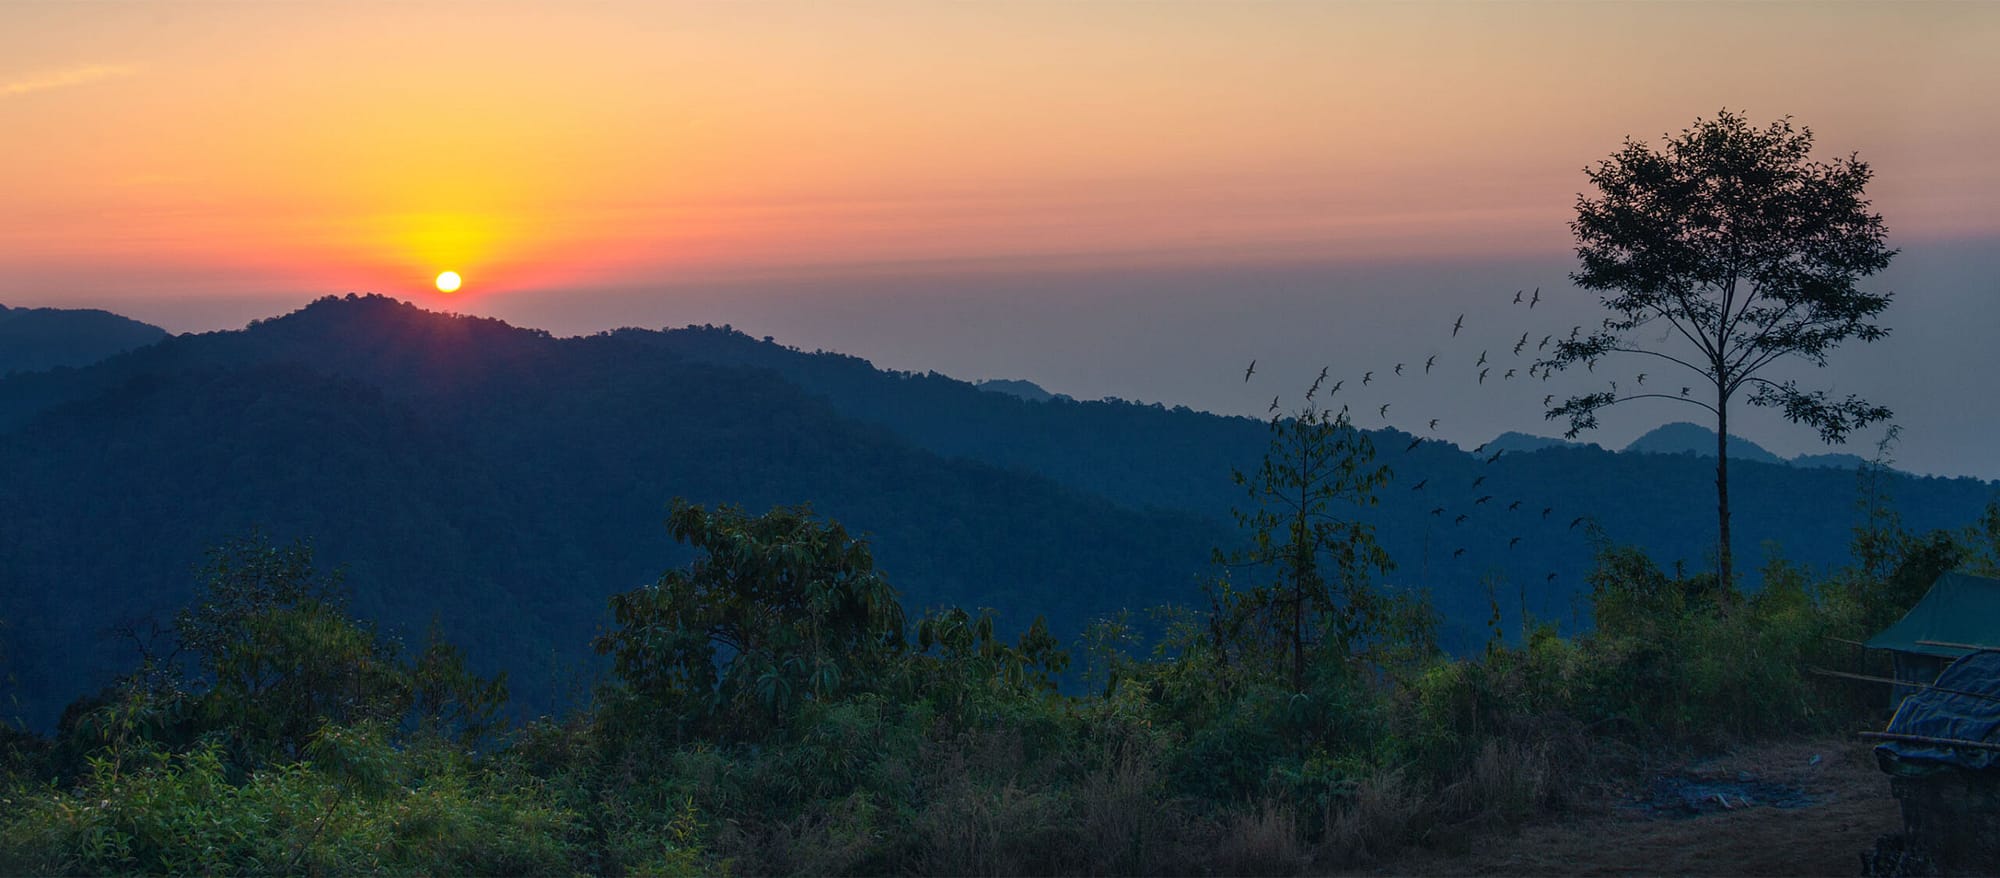 Land of rising sun, Arunachal Pradesh